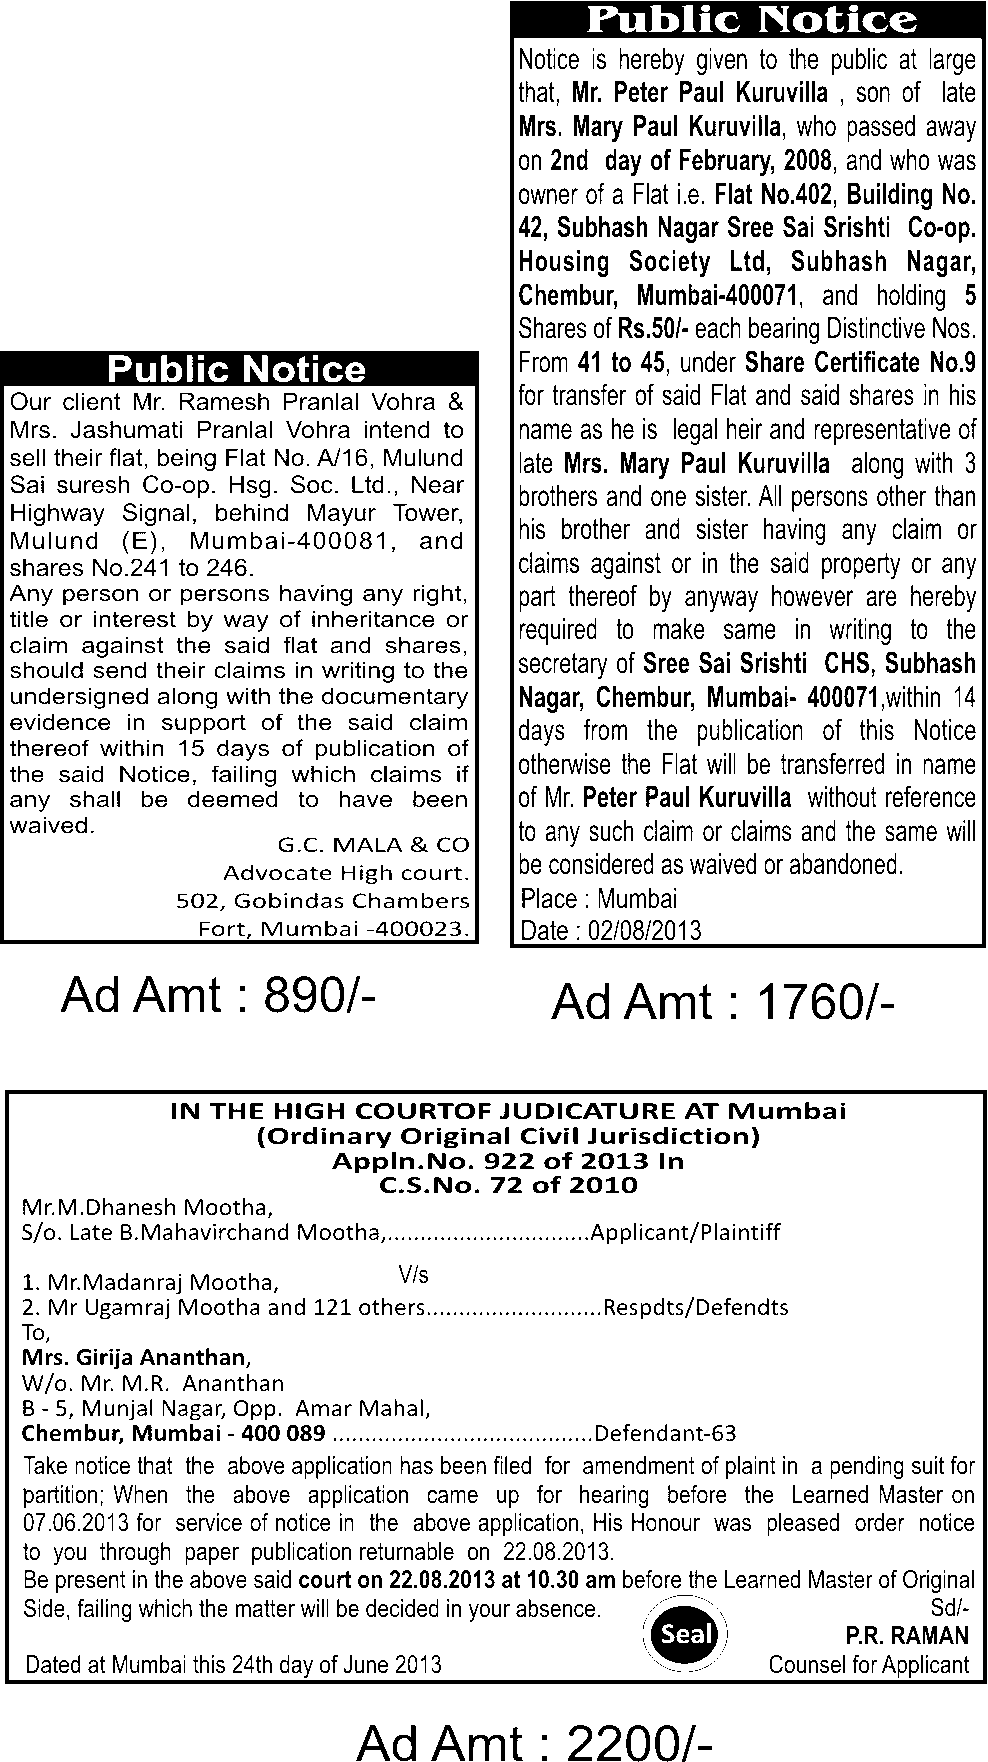 Legal notice ads